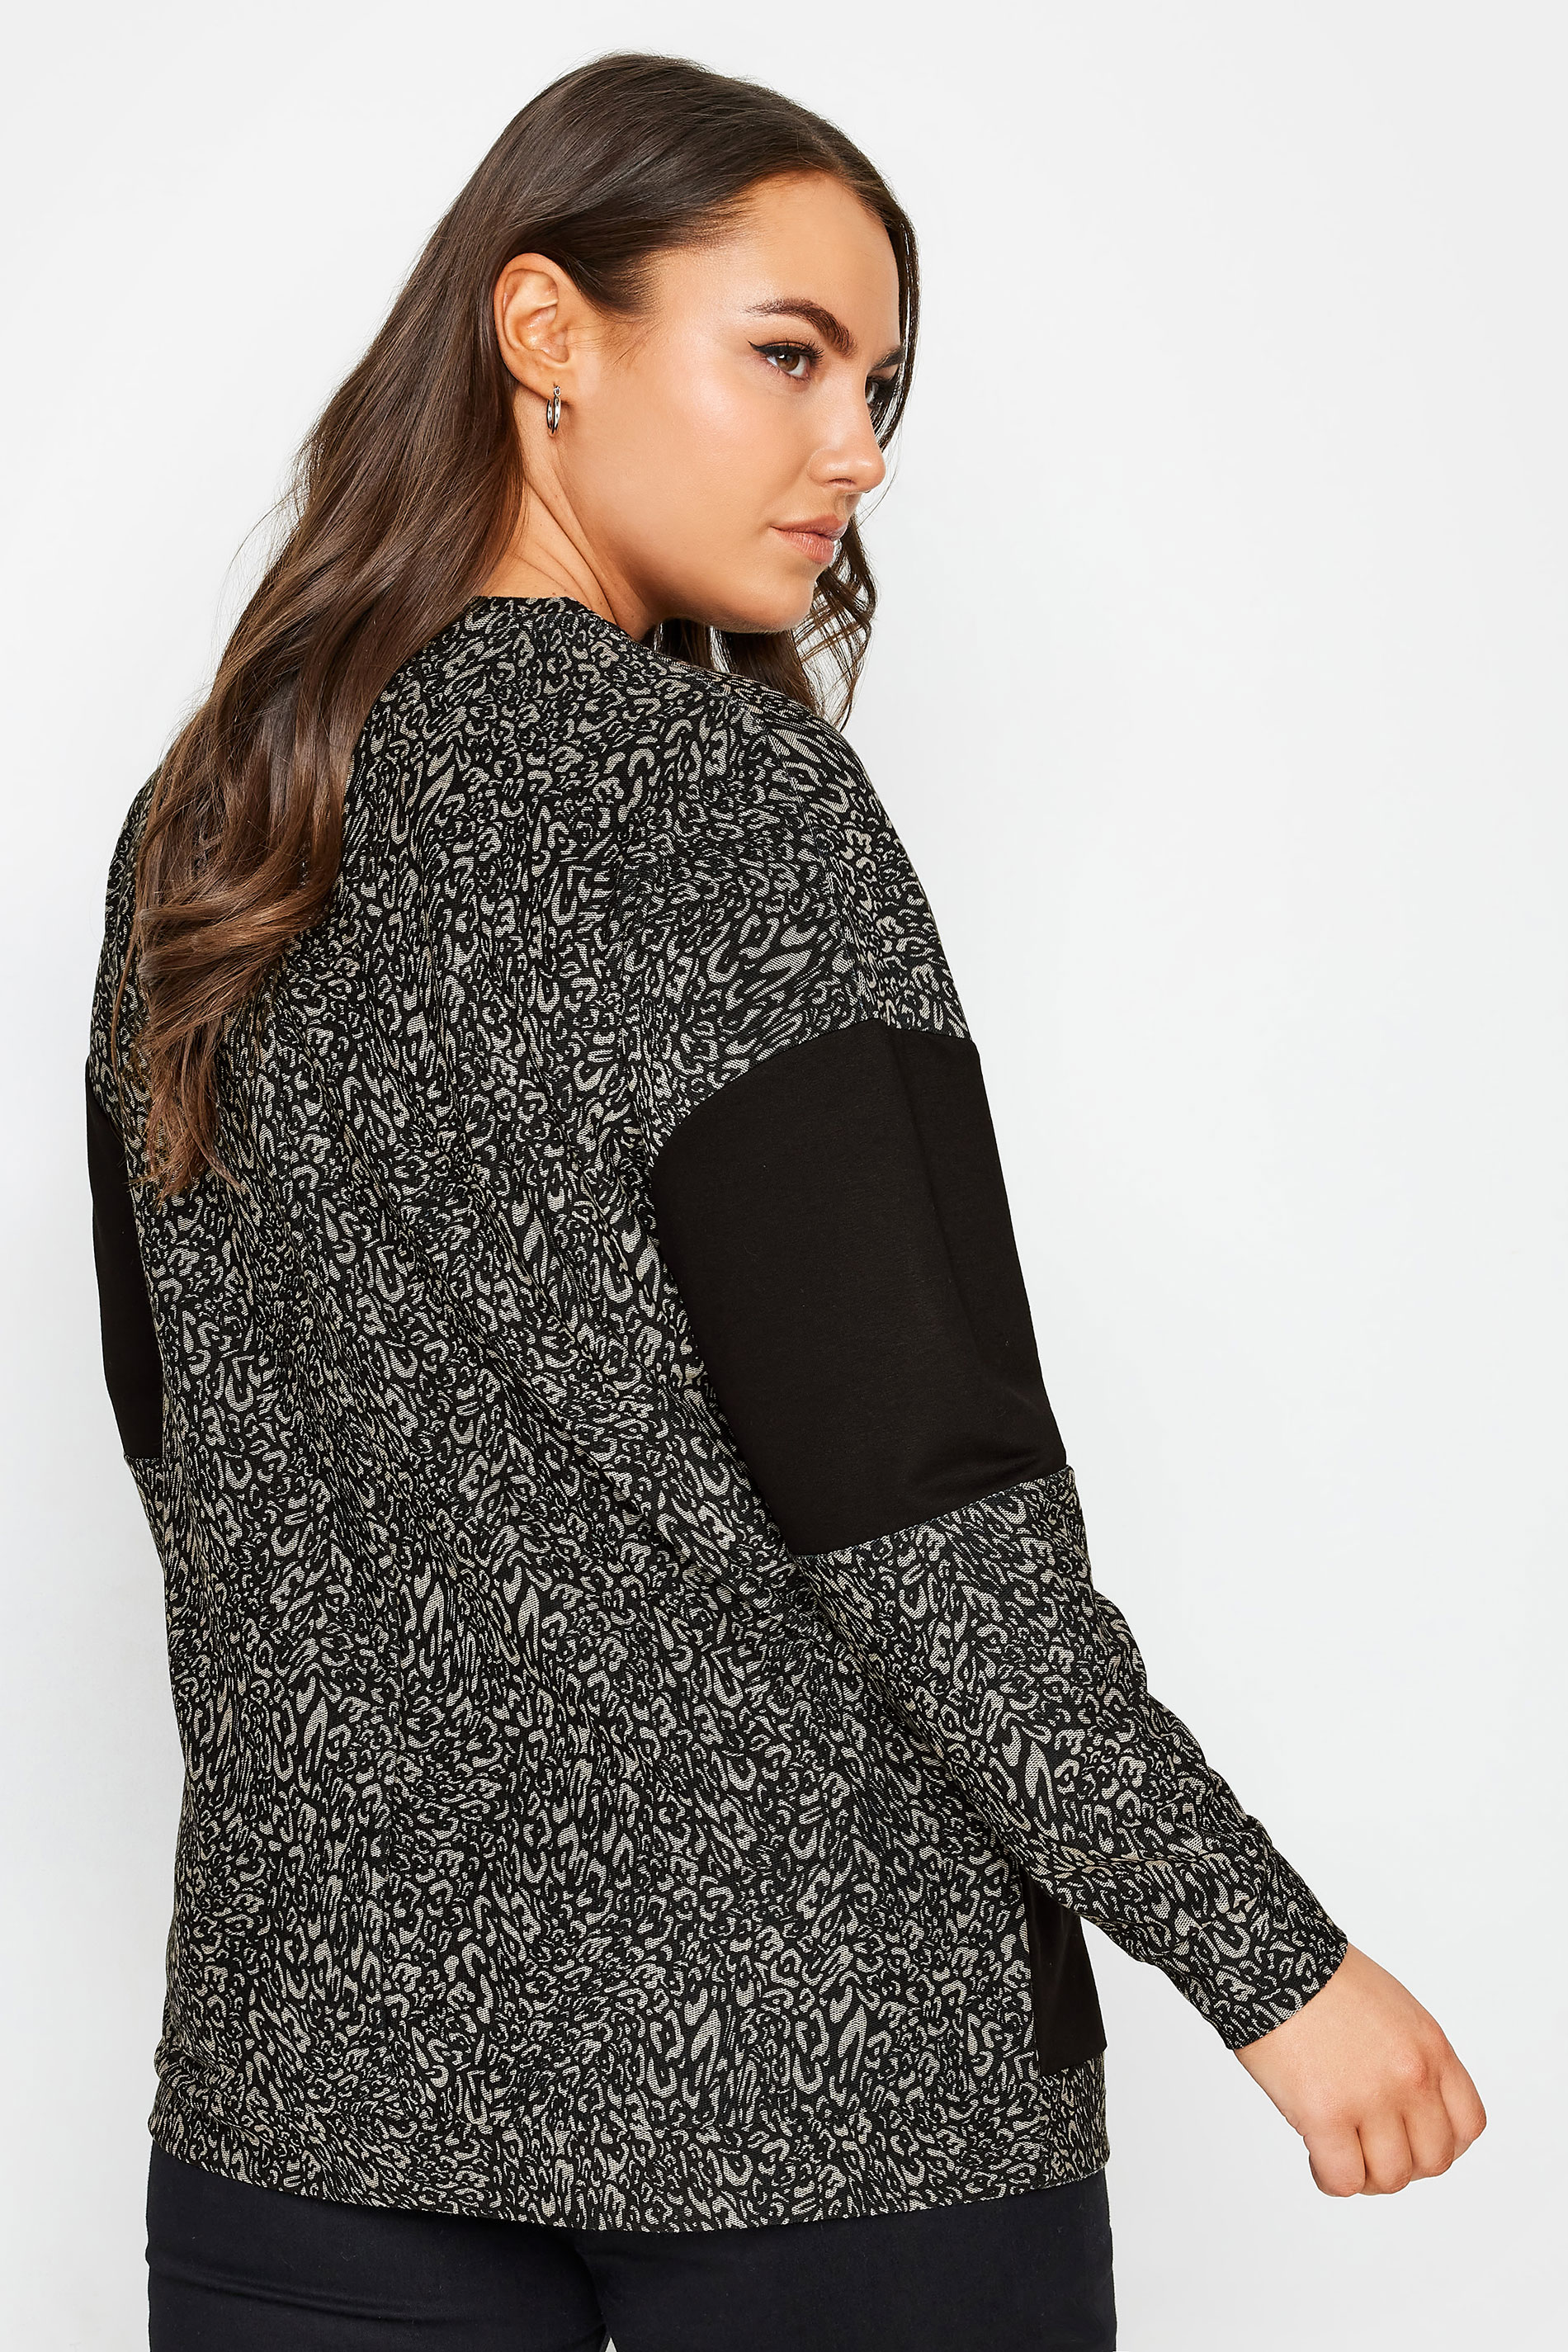 YOURS Plus Size Black Leopard Print Colourblock Sweatshirt | Yours Clothing 3